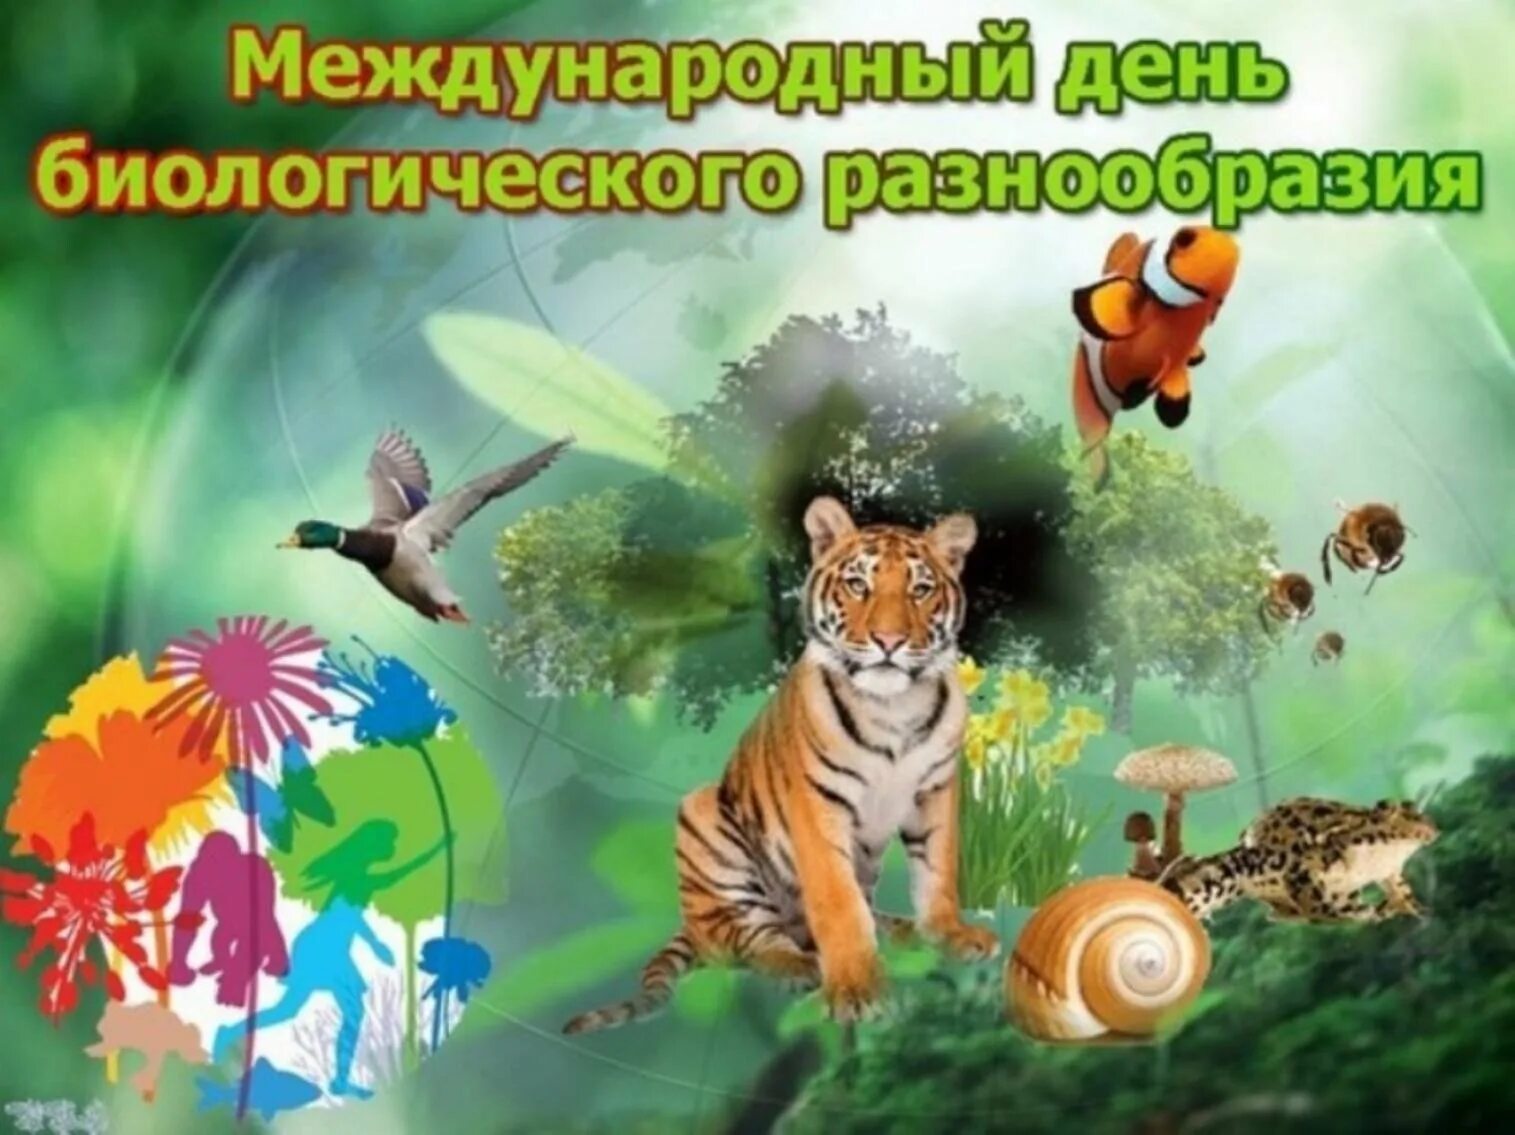 Биологическое разнообразие 5 класс. Международный день биоразнообразия. День биологического разнообразия. Биологическое разнообразие. 22 Мая день биологического разнообразия.